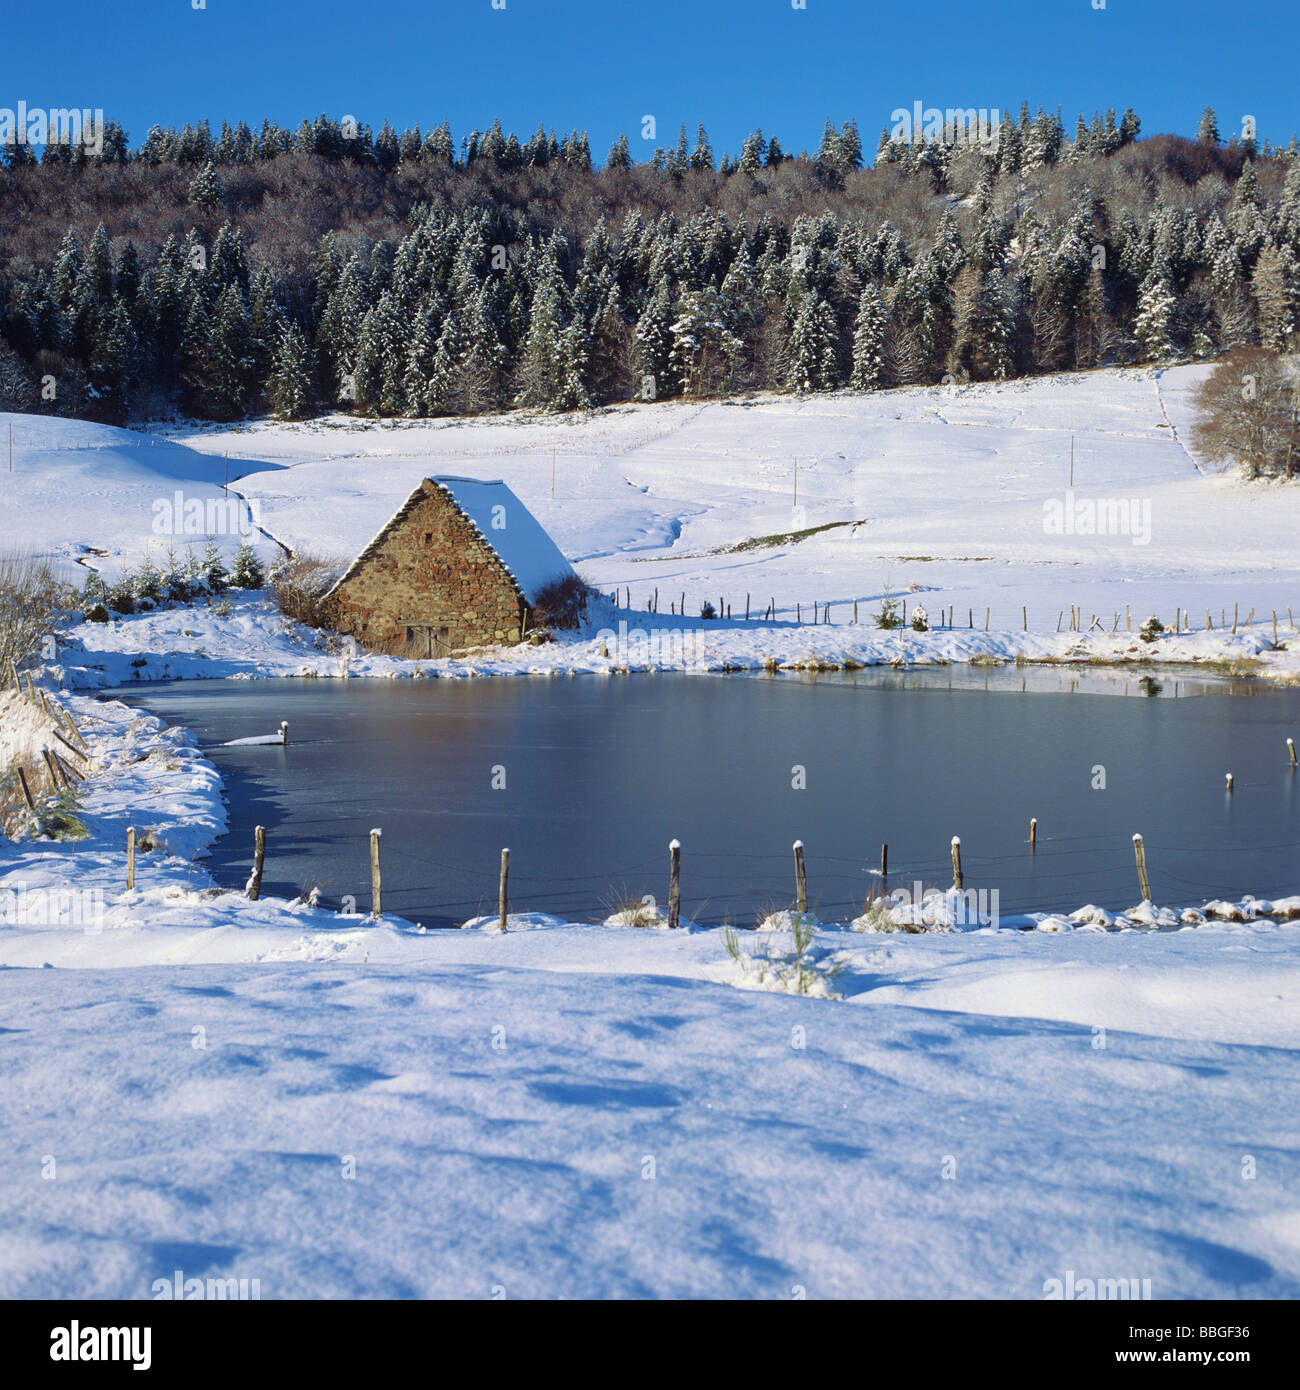 Winter-Szene - Alte Scheune am Rand von einem Teich/See im Winter Landschaft Stockfoto